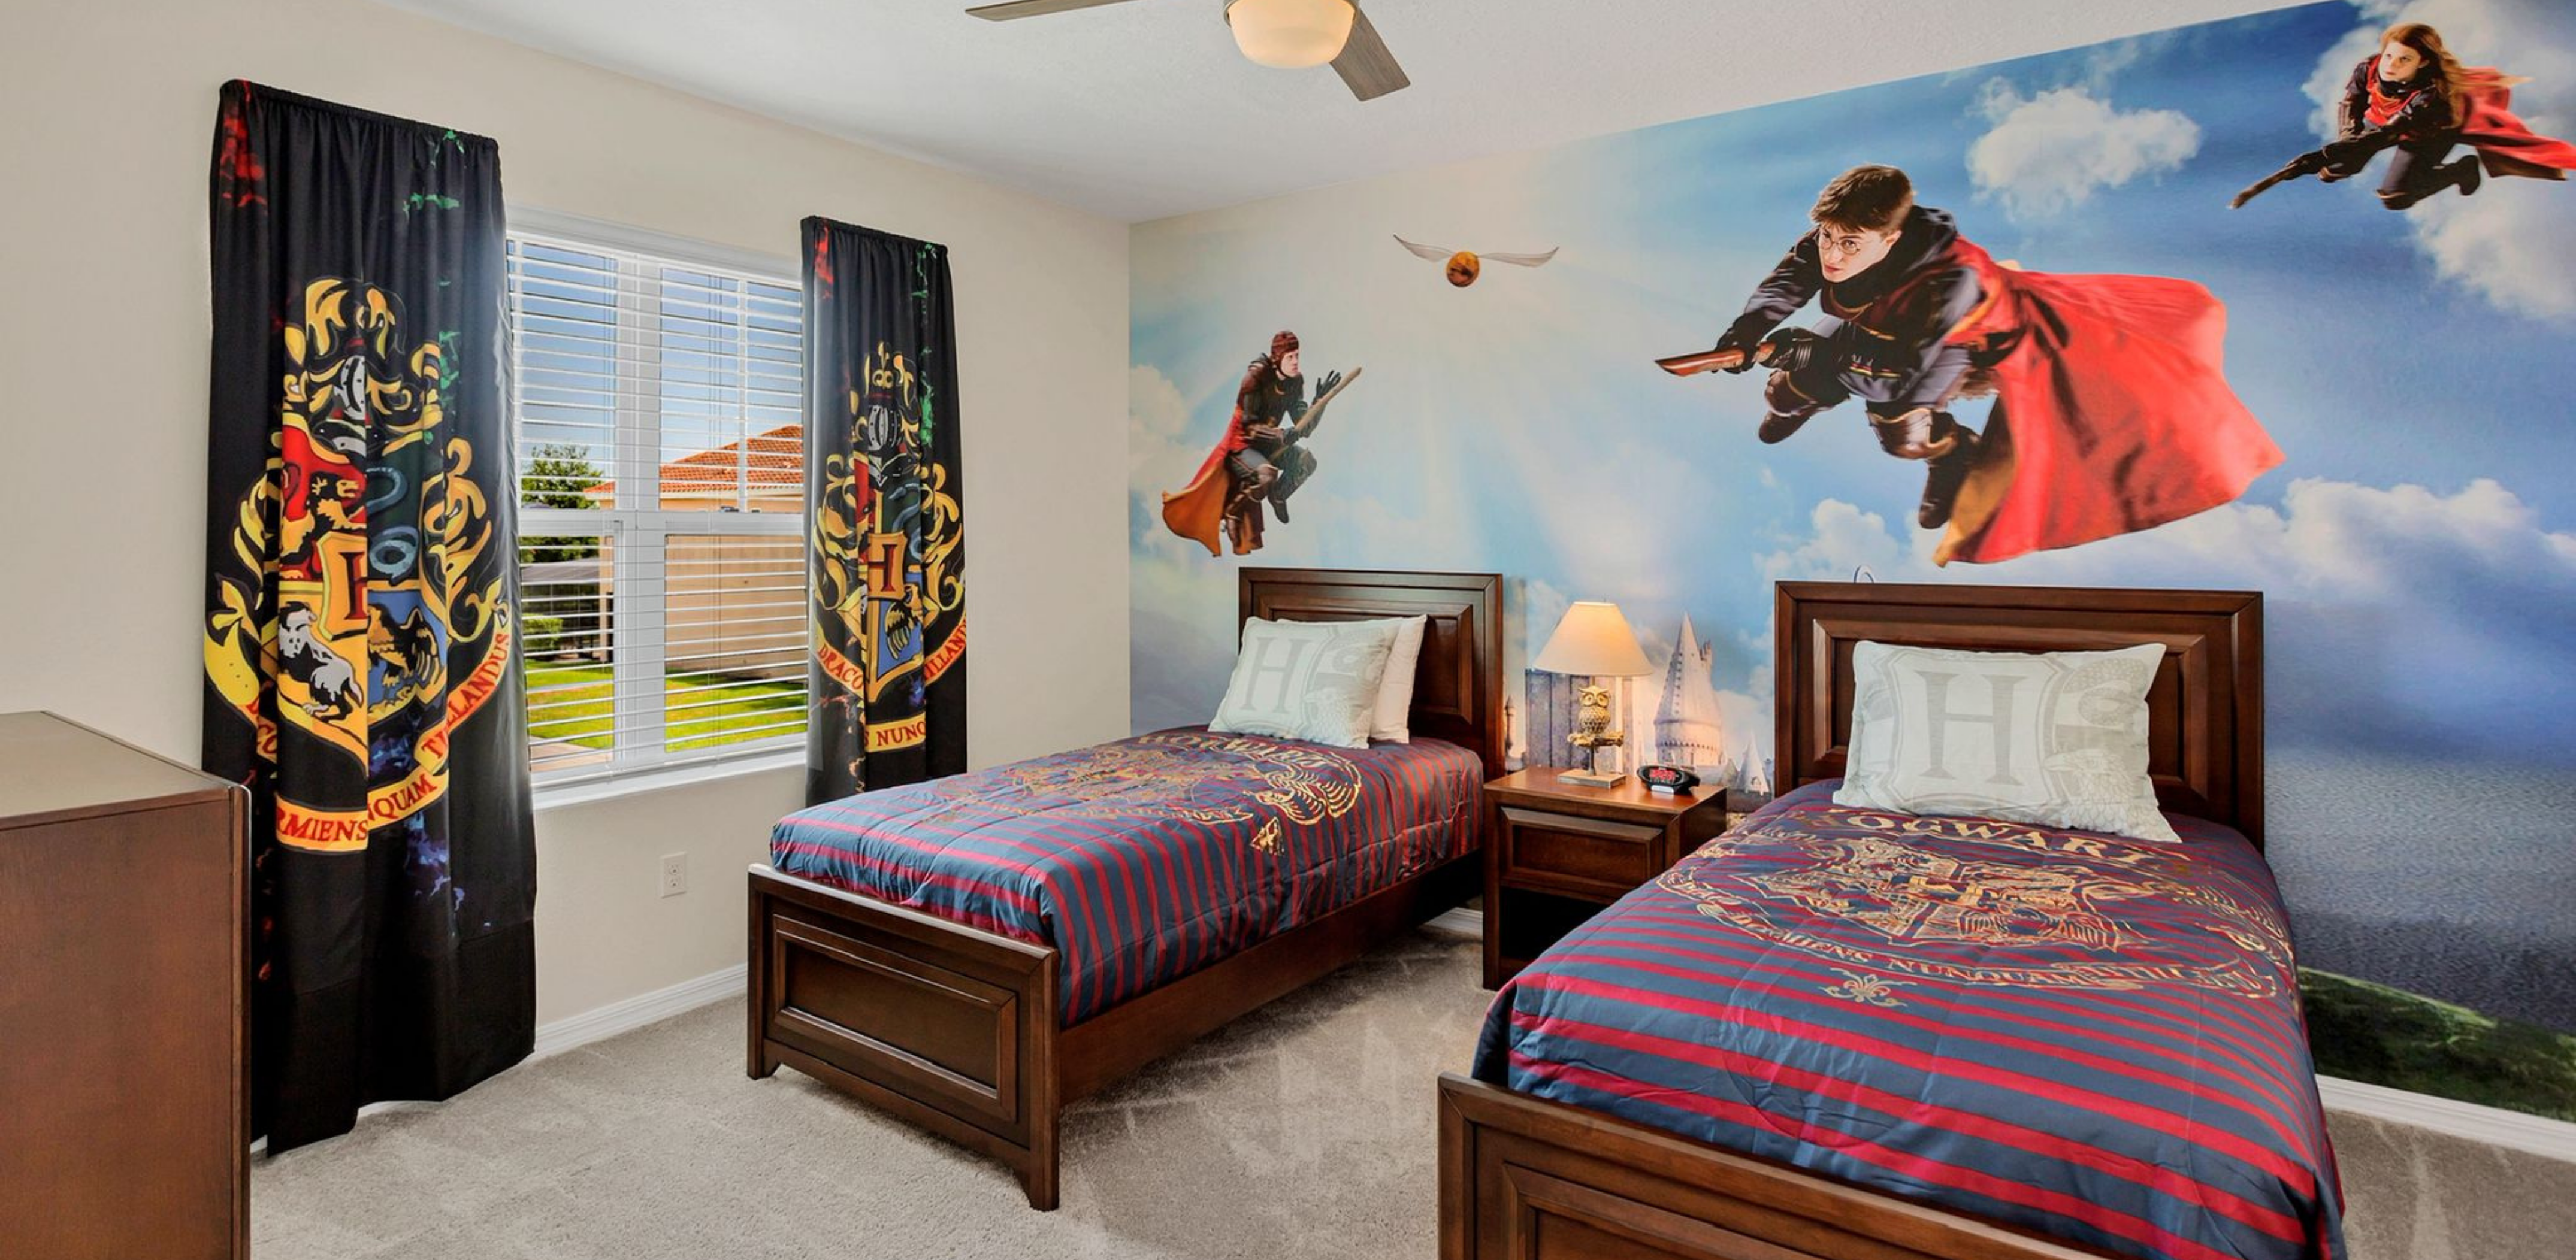 Harry Potter bedroom in Florida